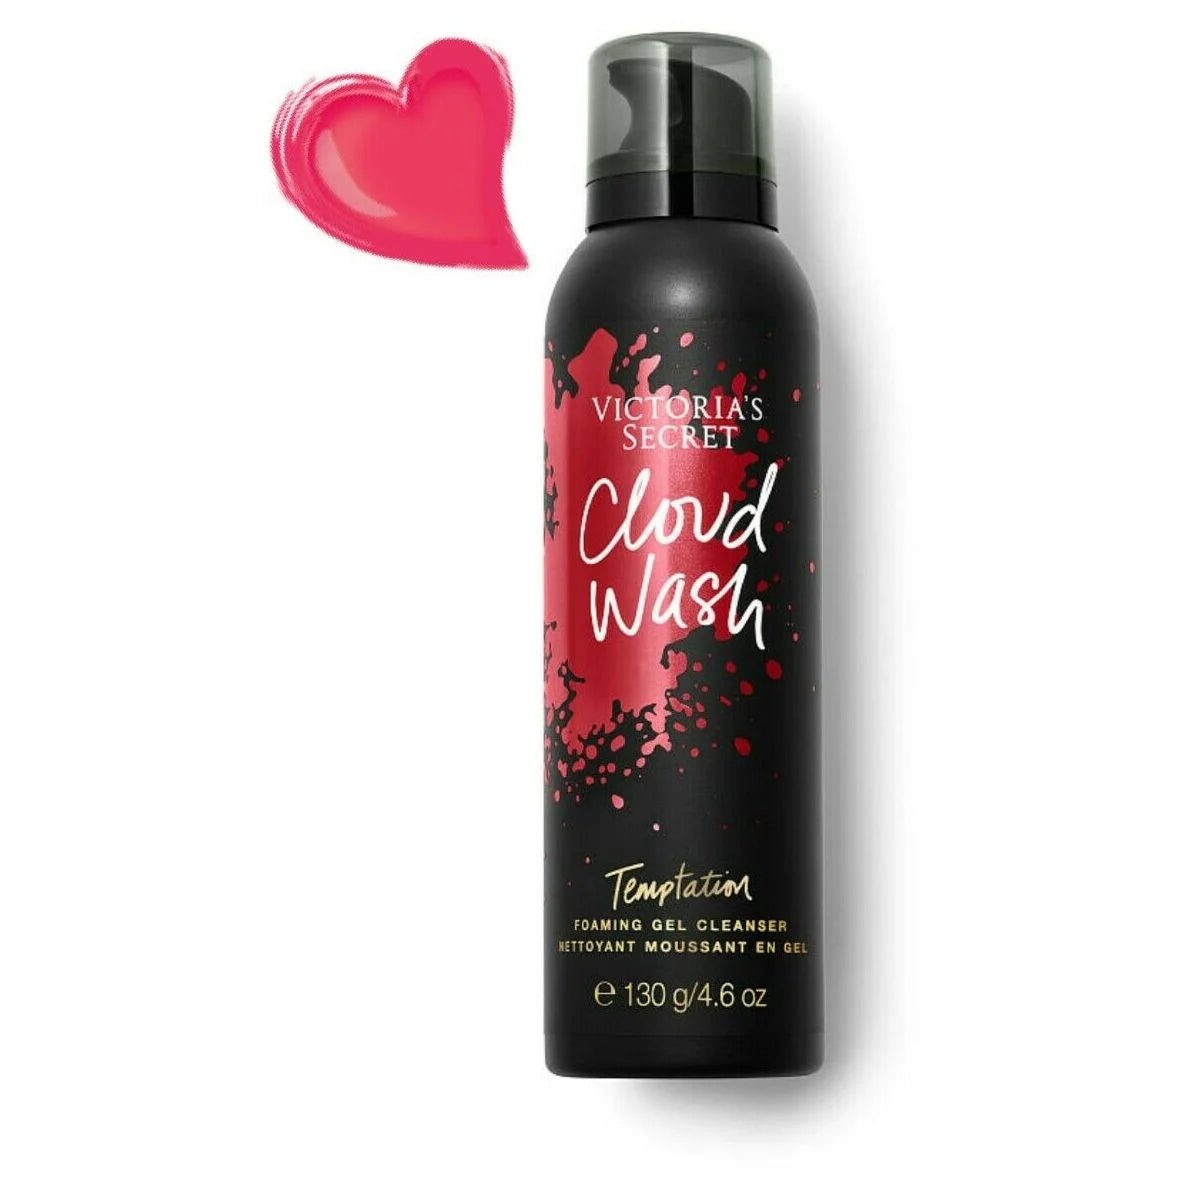 Victoria's Secret Temptation Cloud Wash Foaming Gel Cleanser | My Perfume Shop Australia